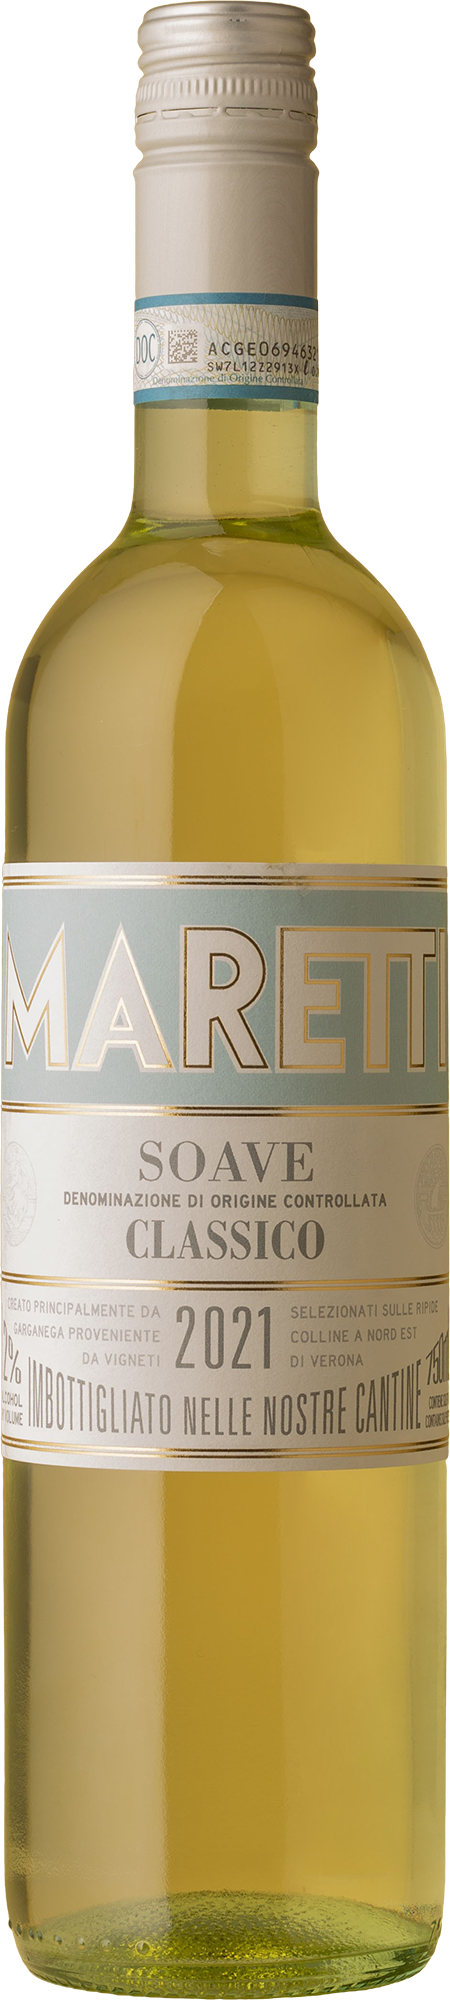 Maretti - Soave Classico Garganega 2021 White Wine